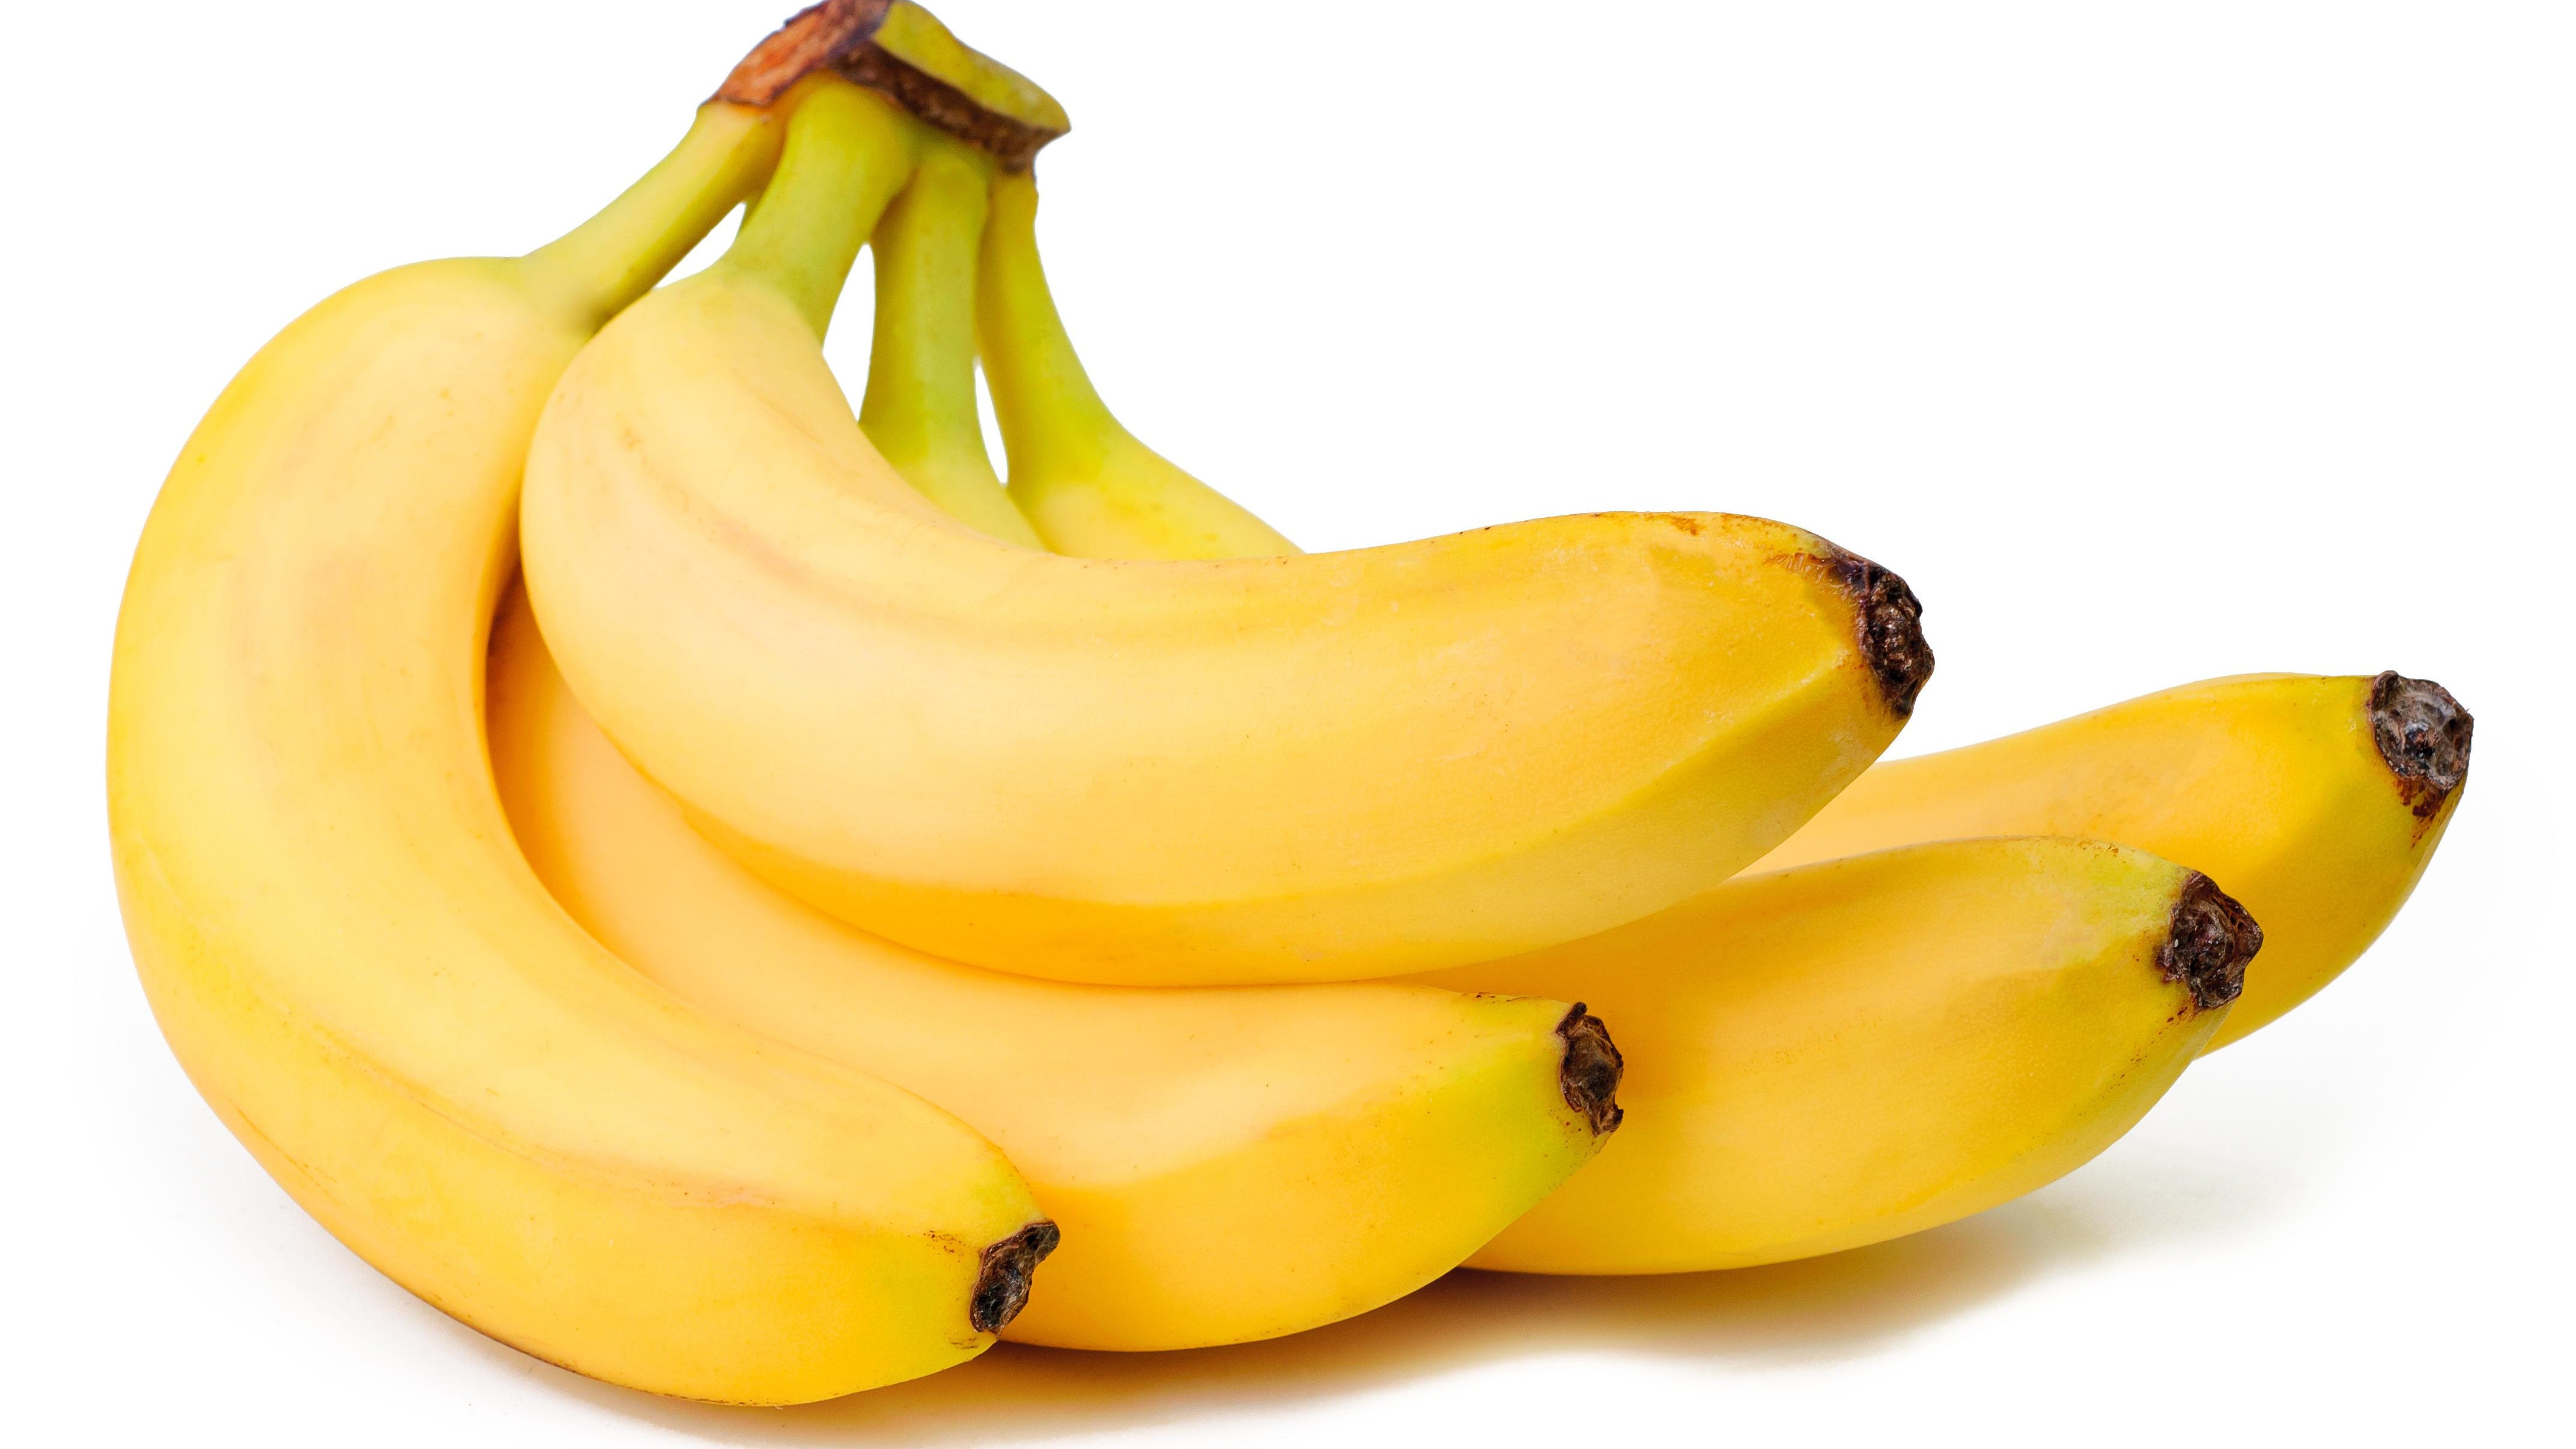 Image Of Banana Fruit - KibrisPDR